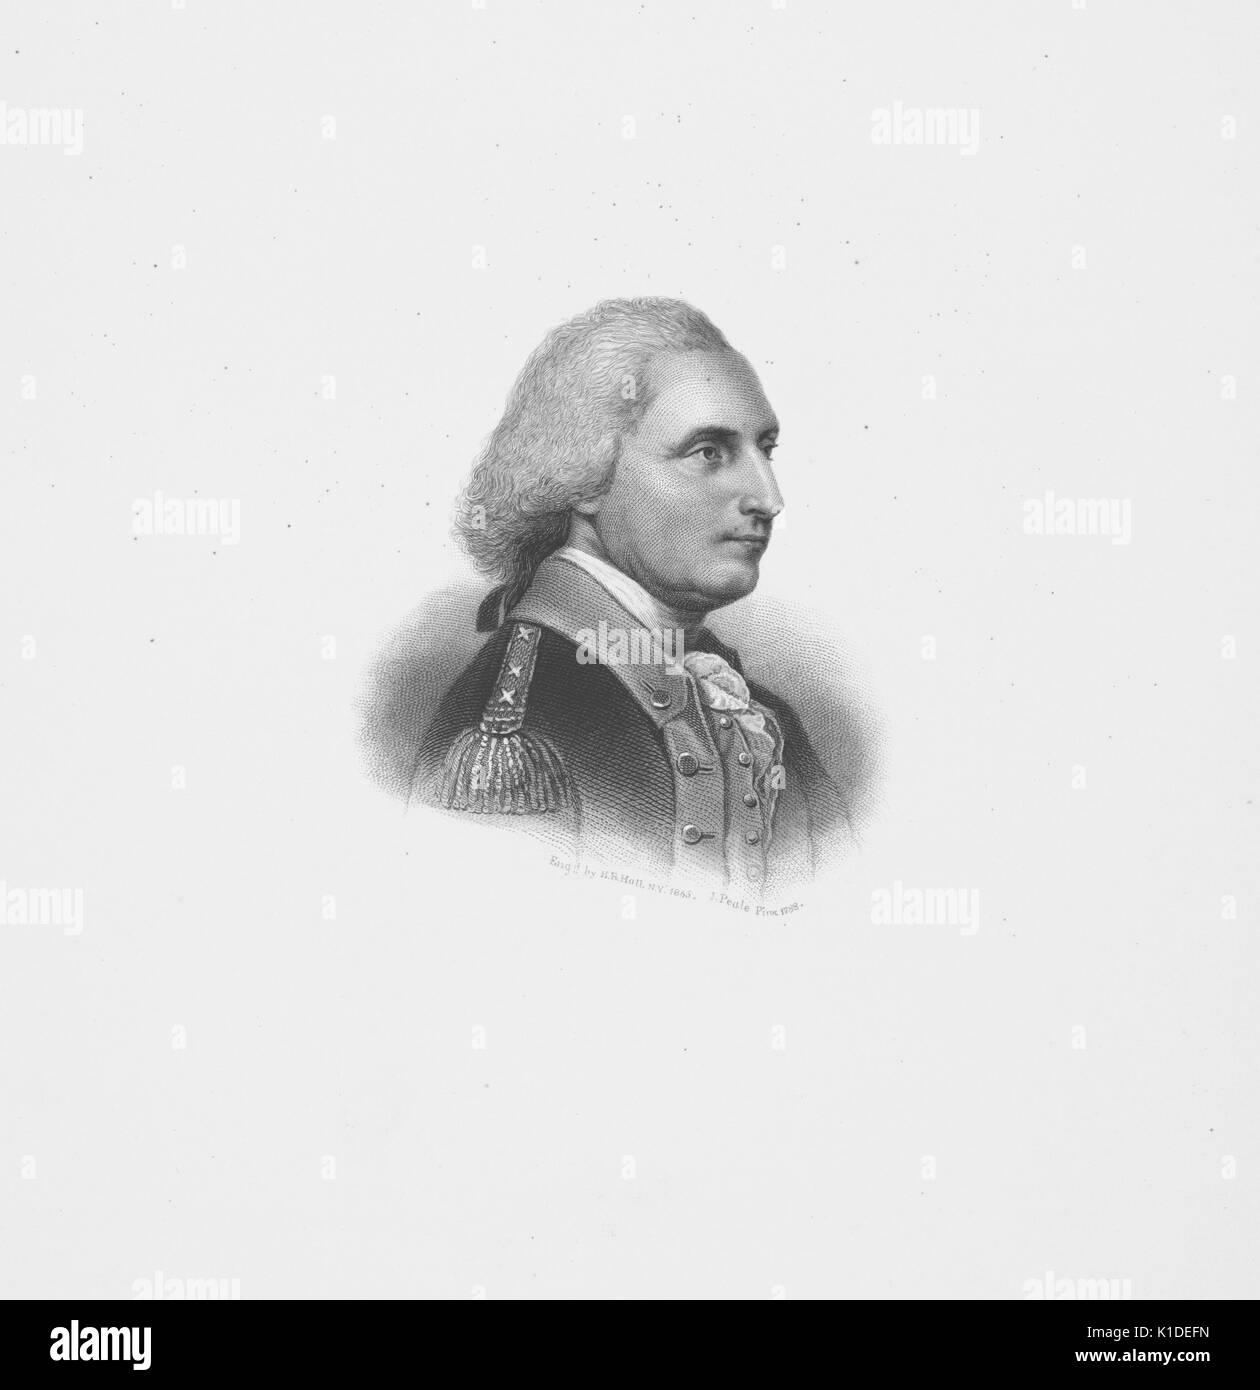 Una incisione da un ritratto di George Washington, raffigurato in una tre-quarto vista di profilo, che indossa una uniforme con insegne militari che indica il suo grado di generale, 1900. dalla biblioteca pubblica di new york. Foto Stock